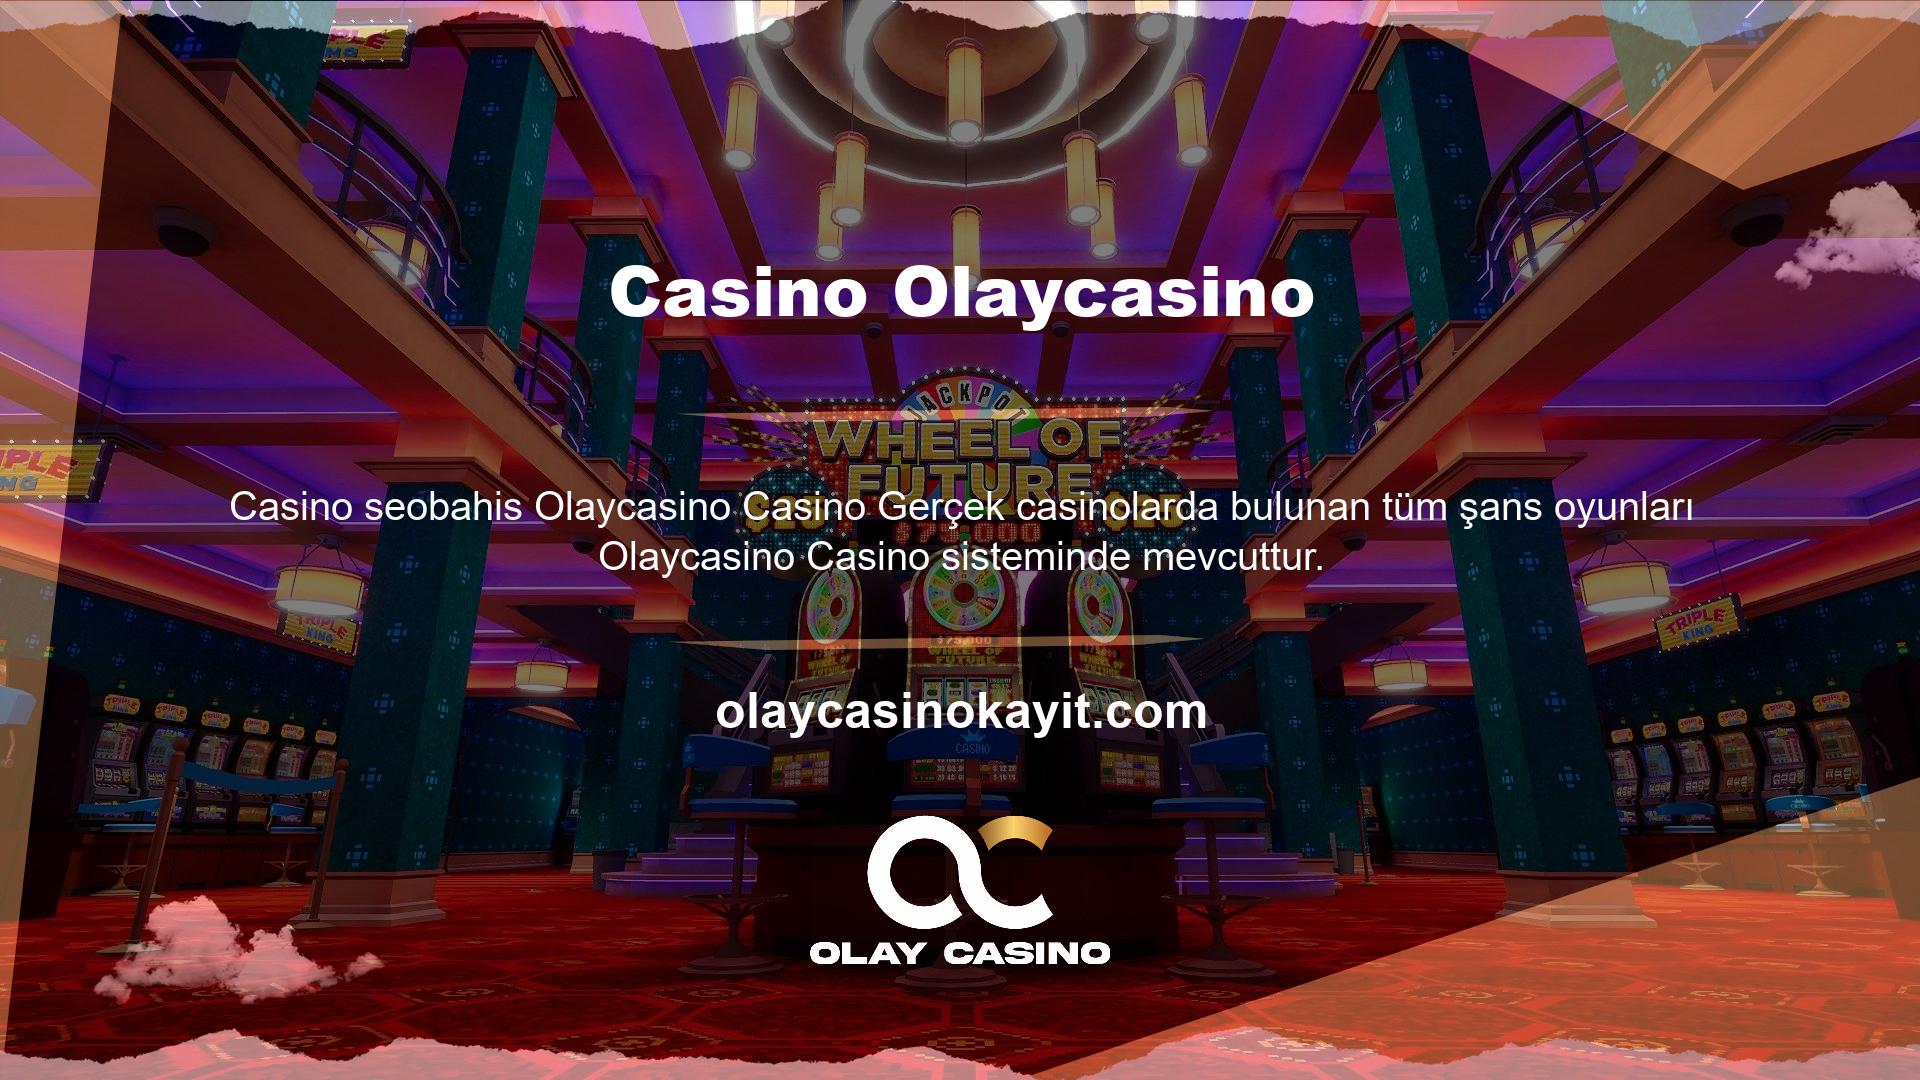 Kullanıcılar ayrıca sistem üzerinden çevrim içi ve çevrim dışı canlı casino oyunları oynayabilirler